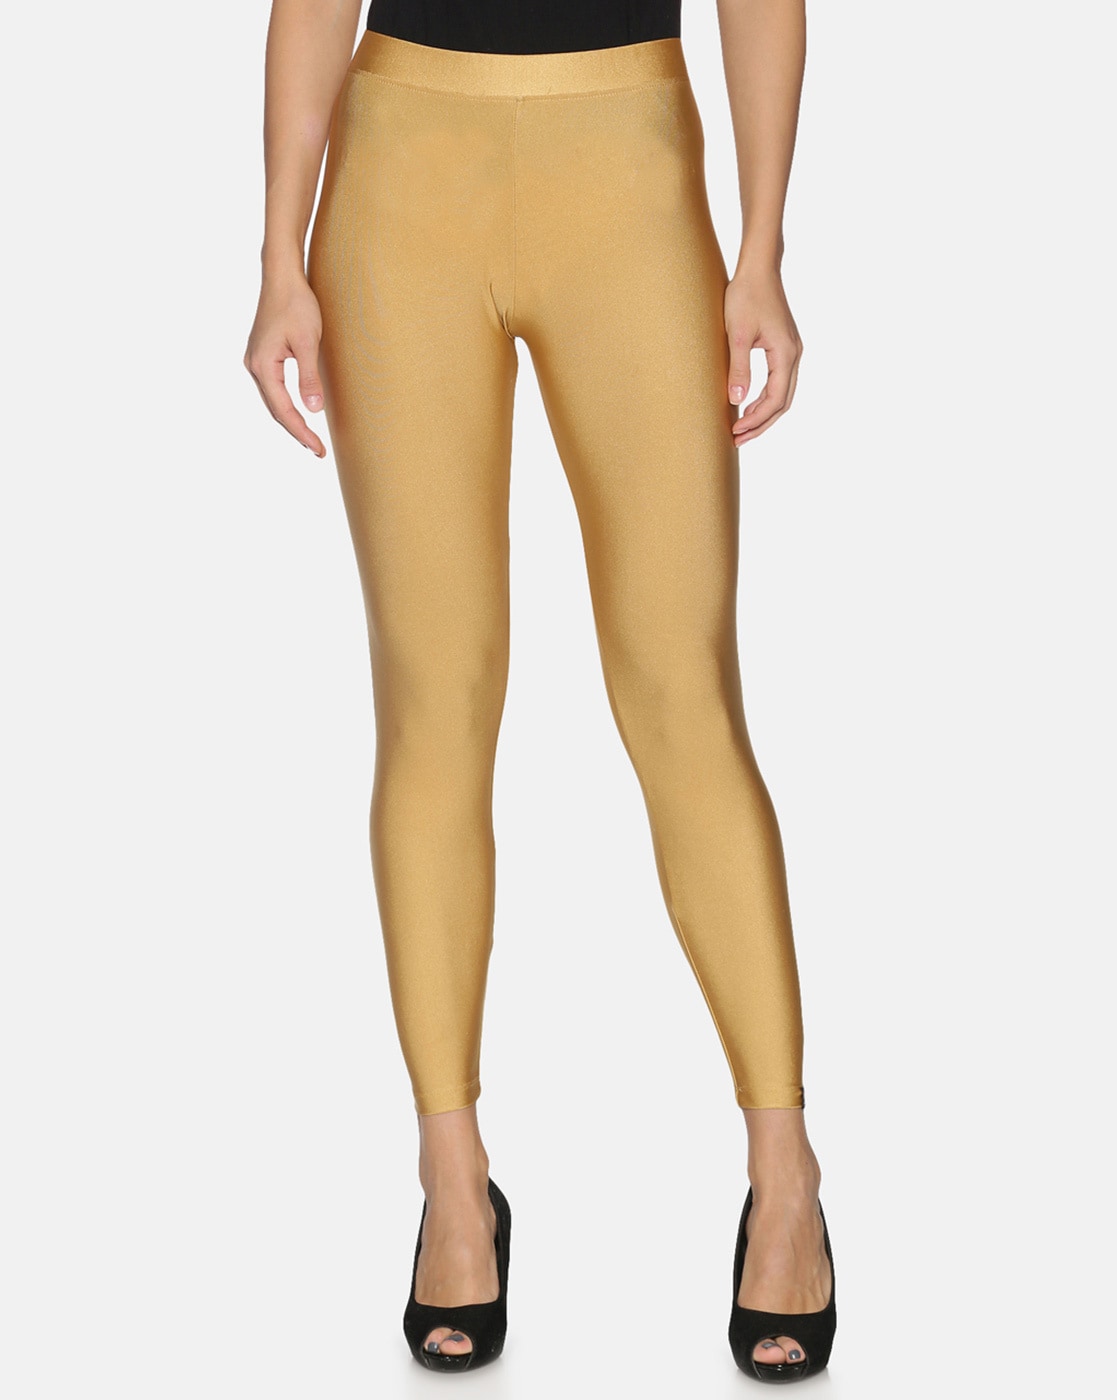 Reveal 135+ gold leggings womens best